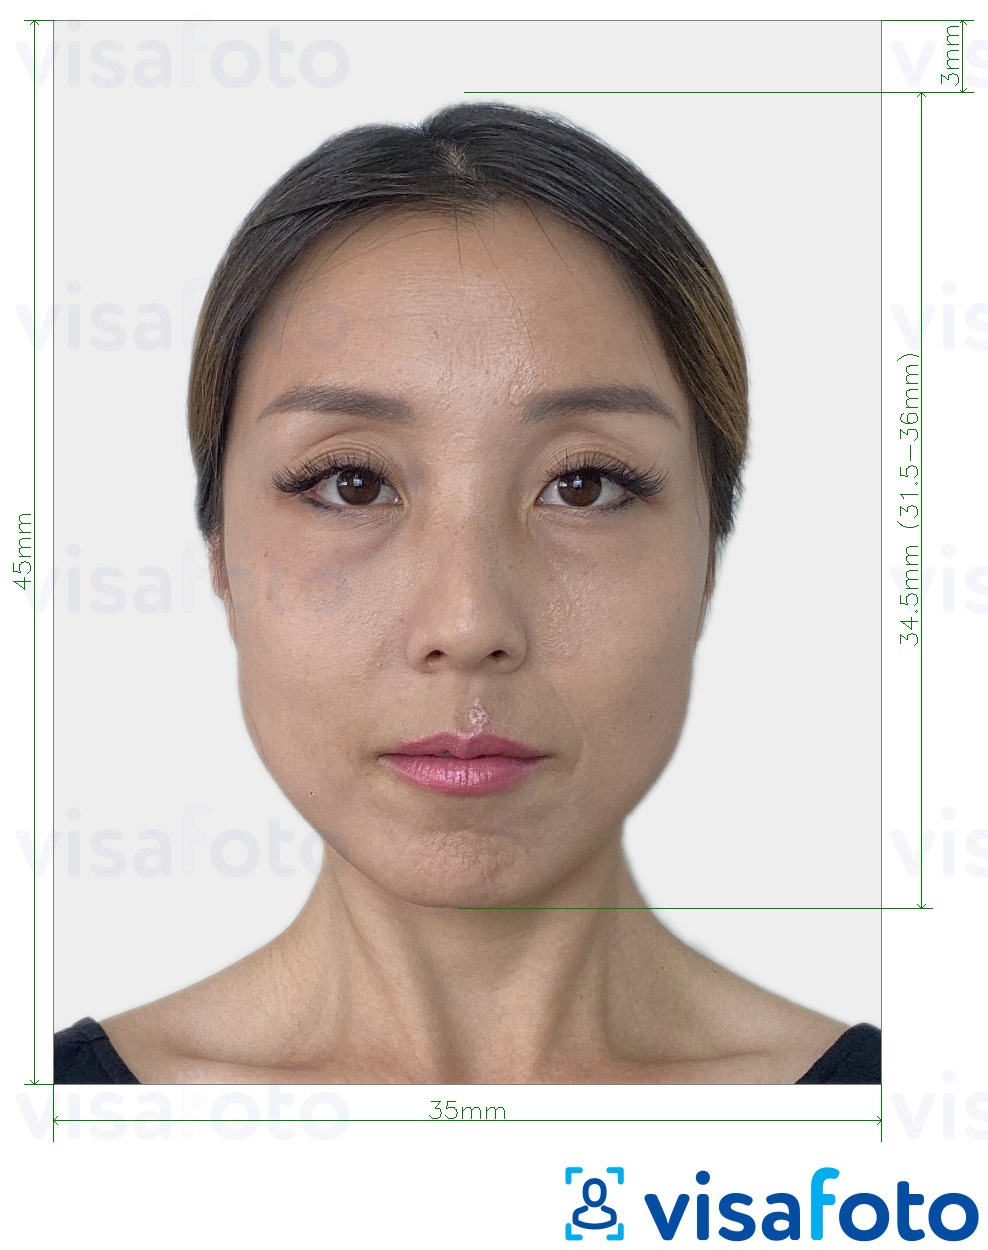 Ejemplo de foto para Visa de Japón 35x45 mm con la especificación del tamaño exacto